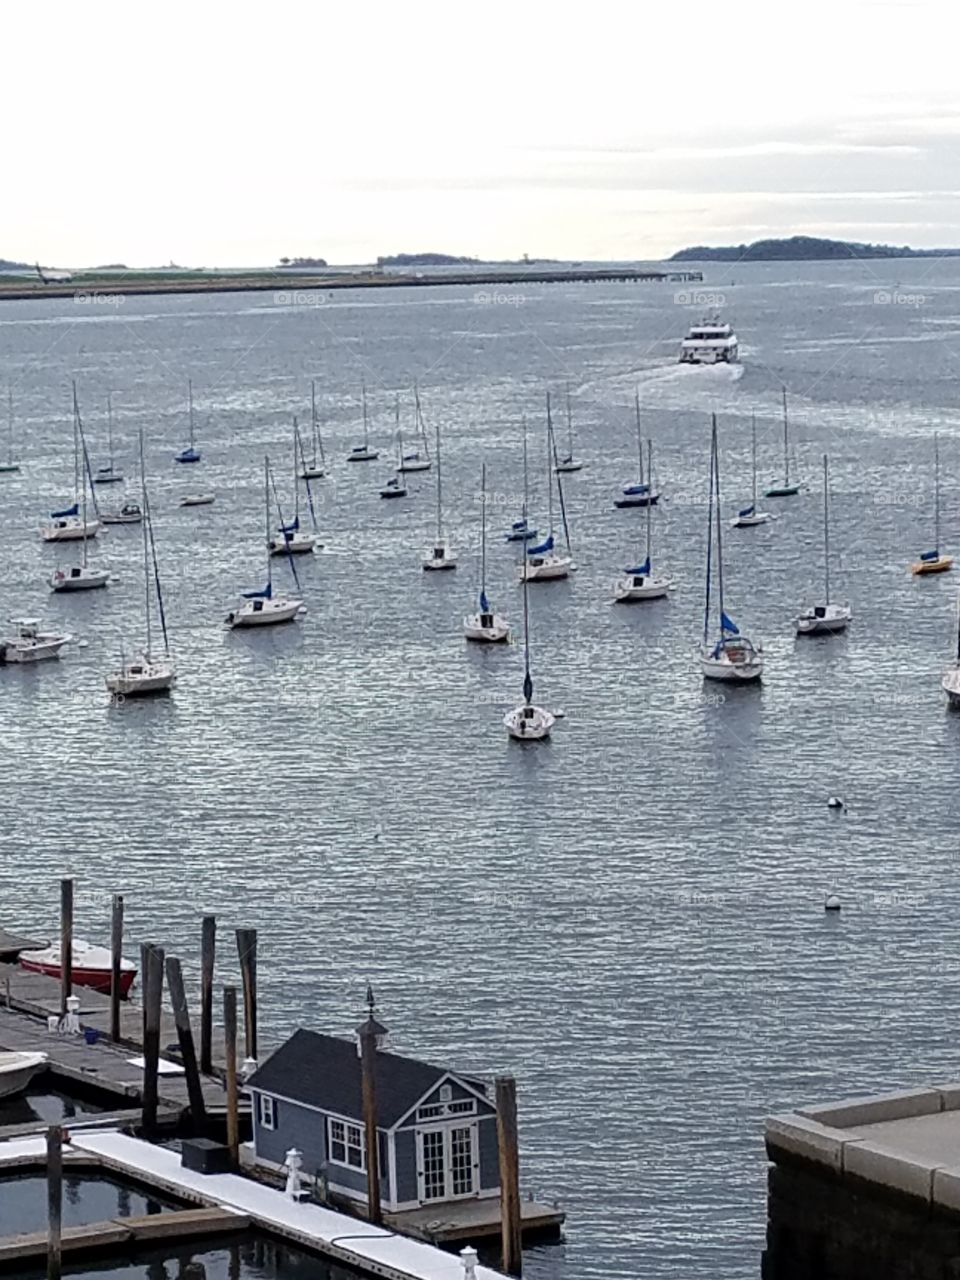 Boats in Boston harbor